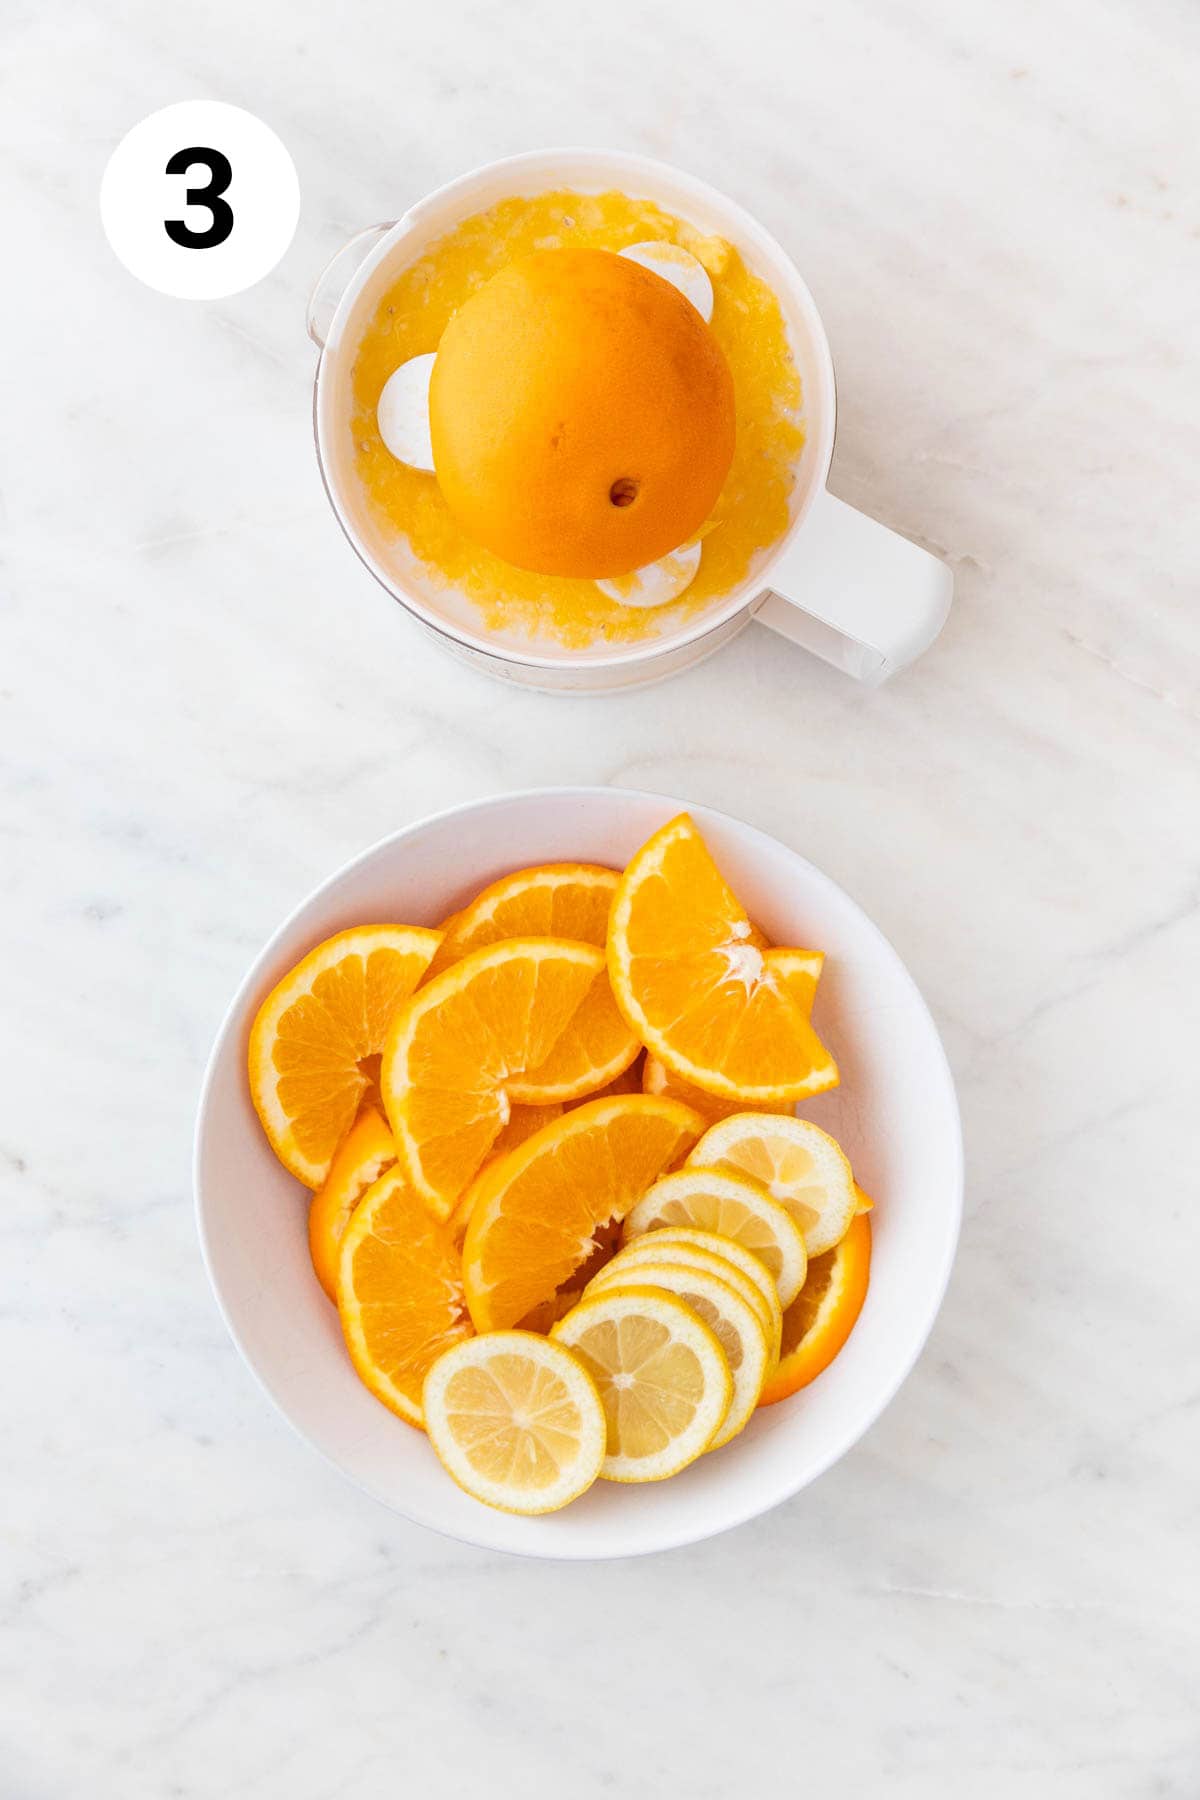 Plato con naranja y limón en rodajas y exprimidor de naranjas con zumo de naranja.